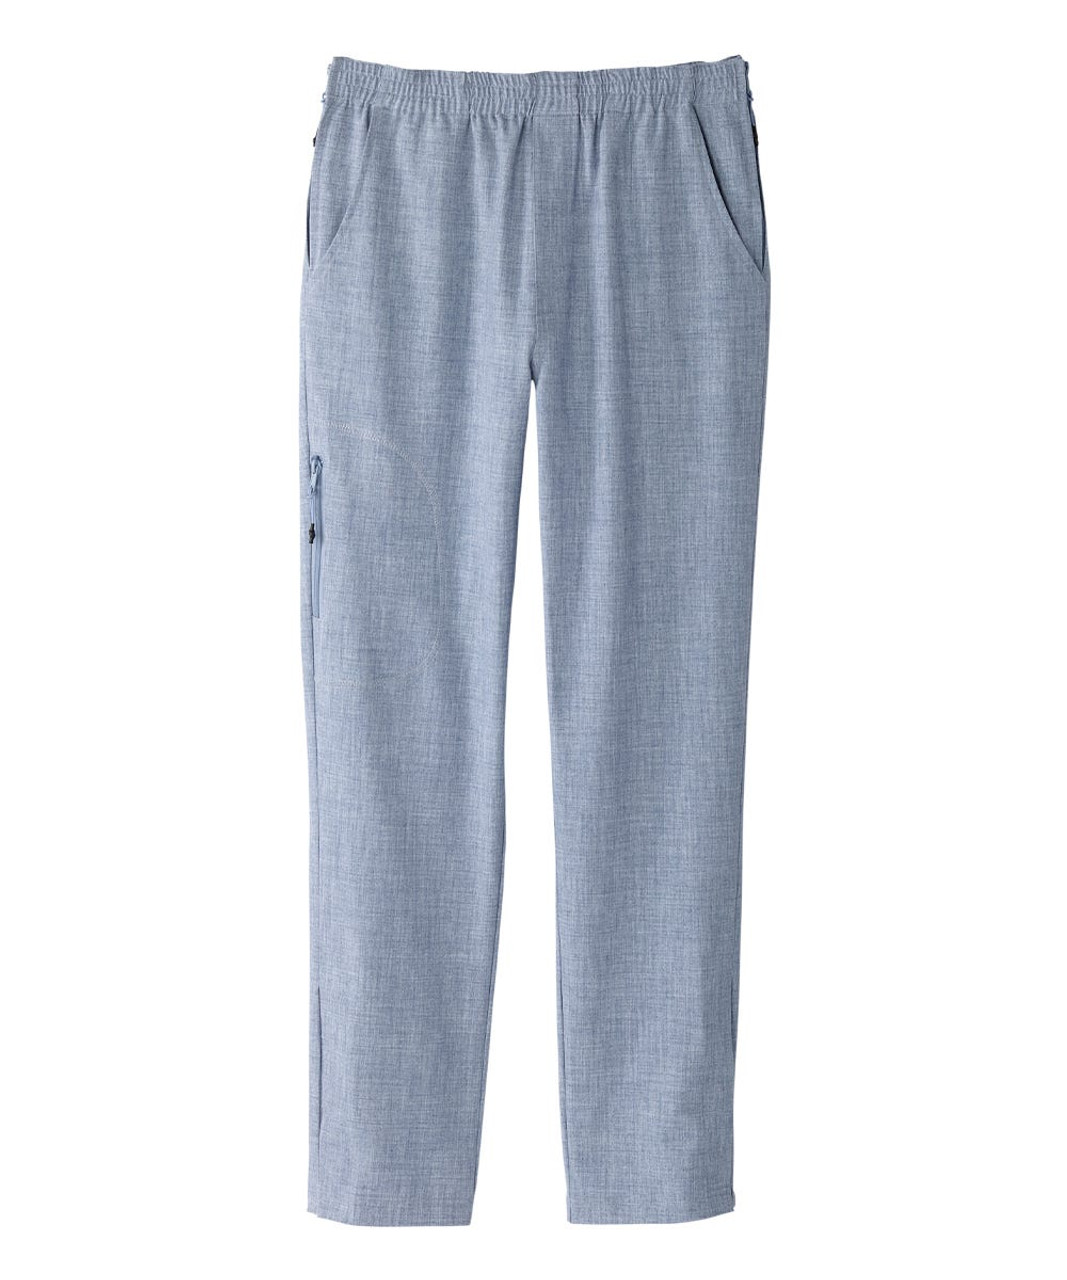 Silverts SV040 Senior Women's Side Zip Adaptive Linen Pant Breezy Blue, Size=S, SV040-SV2003-S